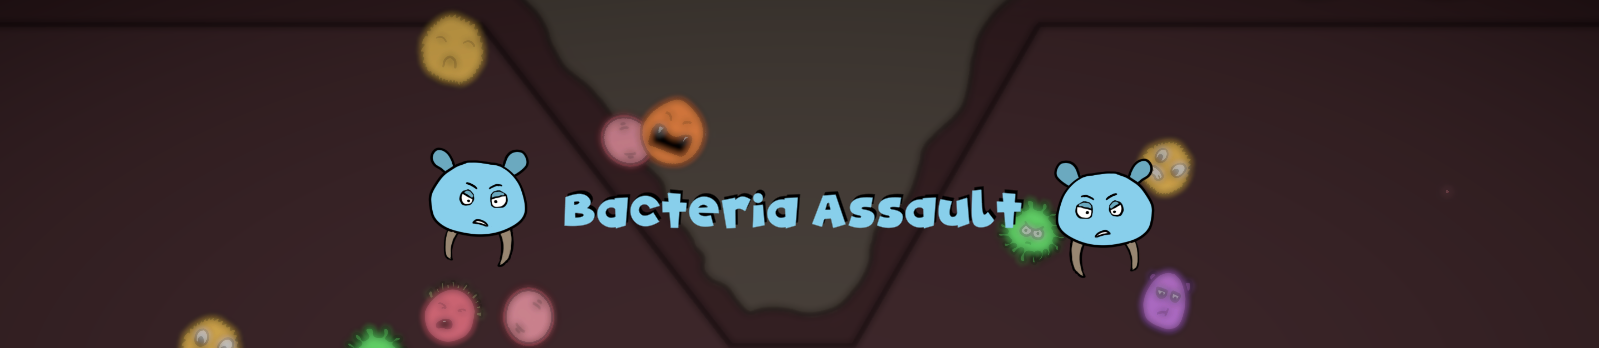 Bacteria Assault